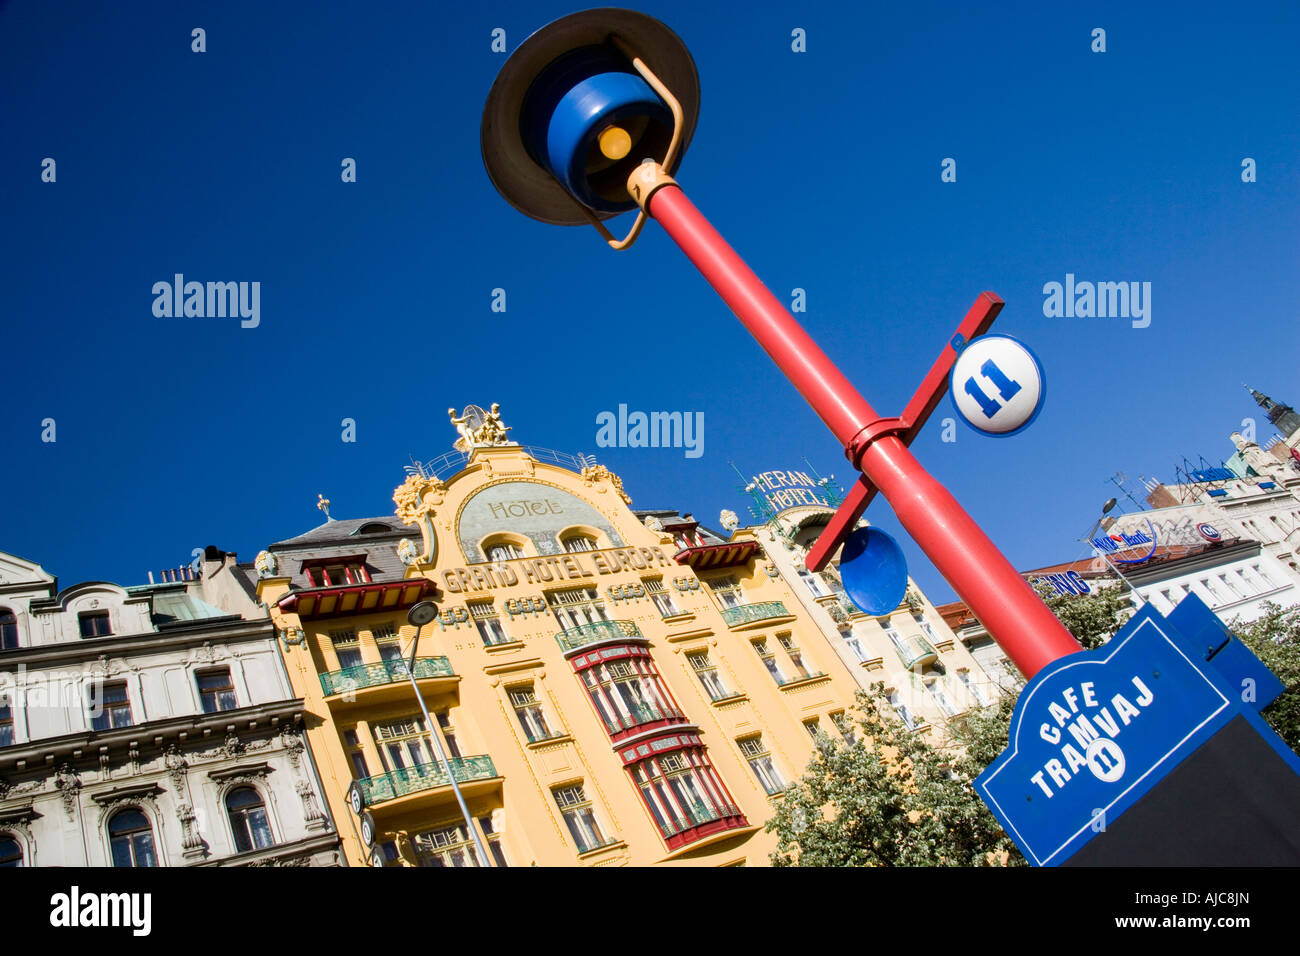 Tschechische Republik Tschechien Bohemia Prag bunte Lampe Post Cafe Tramvaj  Jugendstil Grand Hotel Europa und Meran Hotel Stockfotografie - Alamy